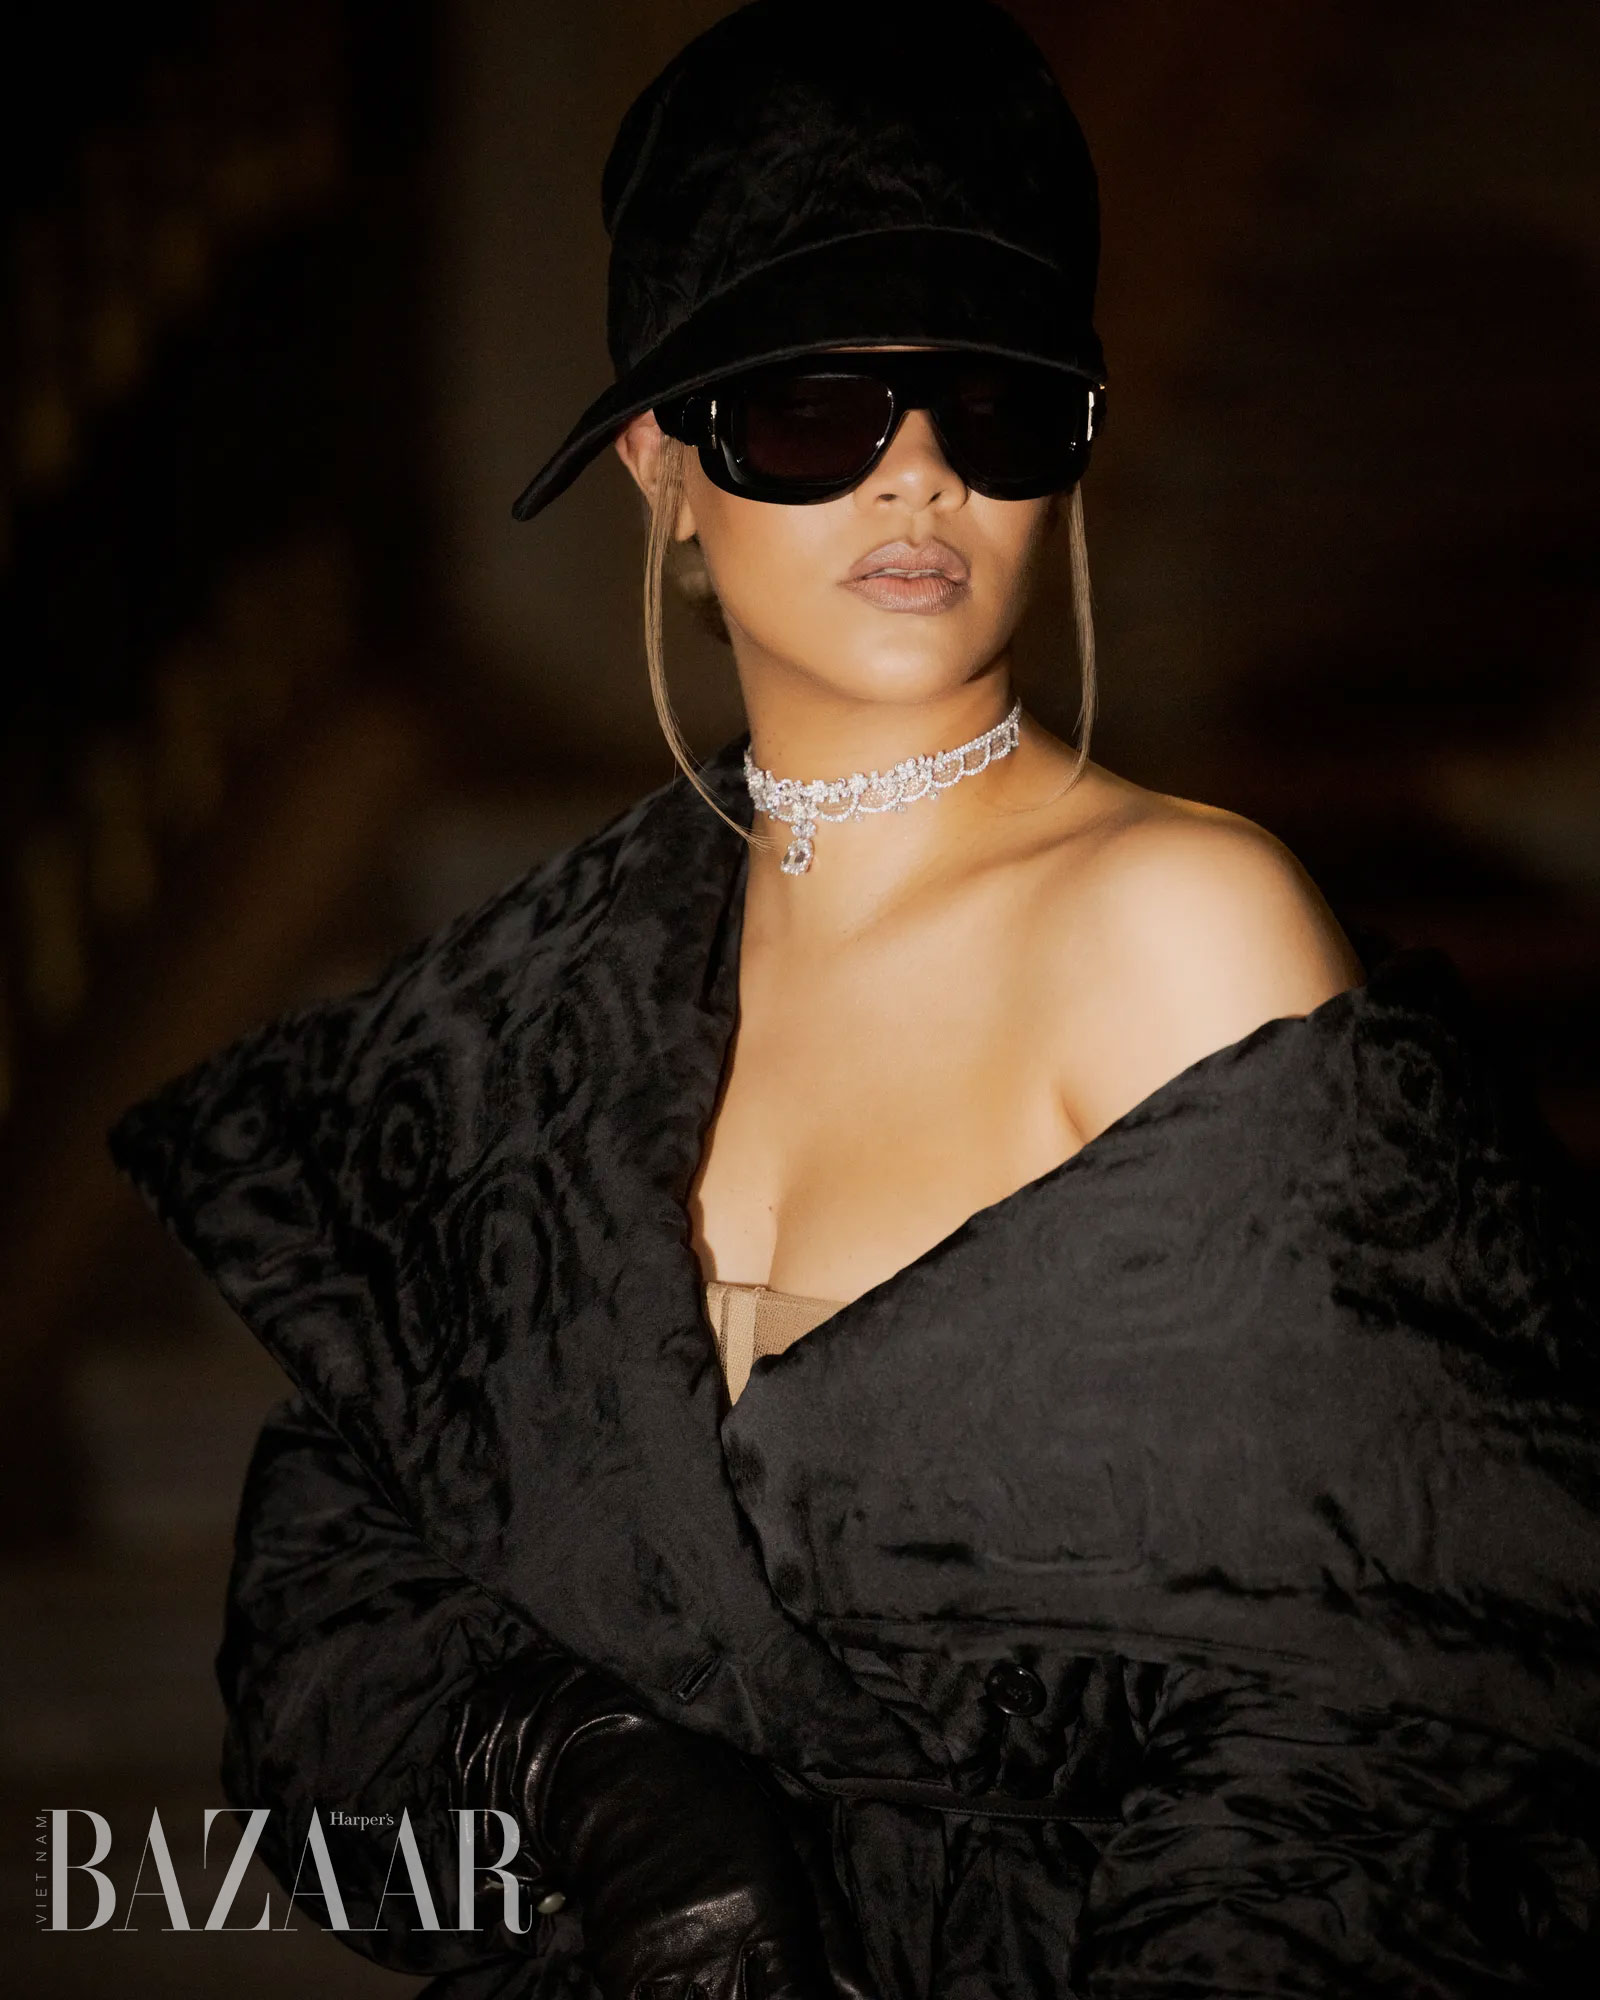 Dior tuyên bố Rihanna là gương mặt đại diện mới cho dòng nước hoa J'Adore. Ảnh: Dior